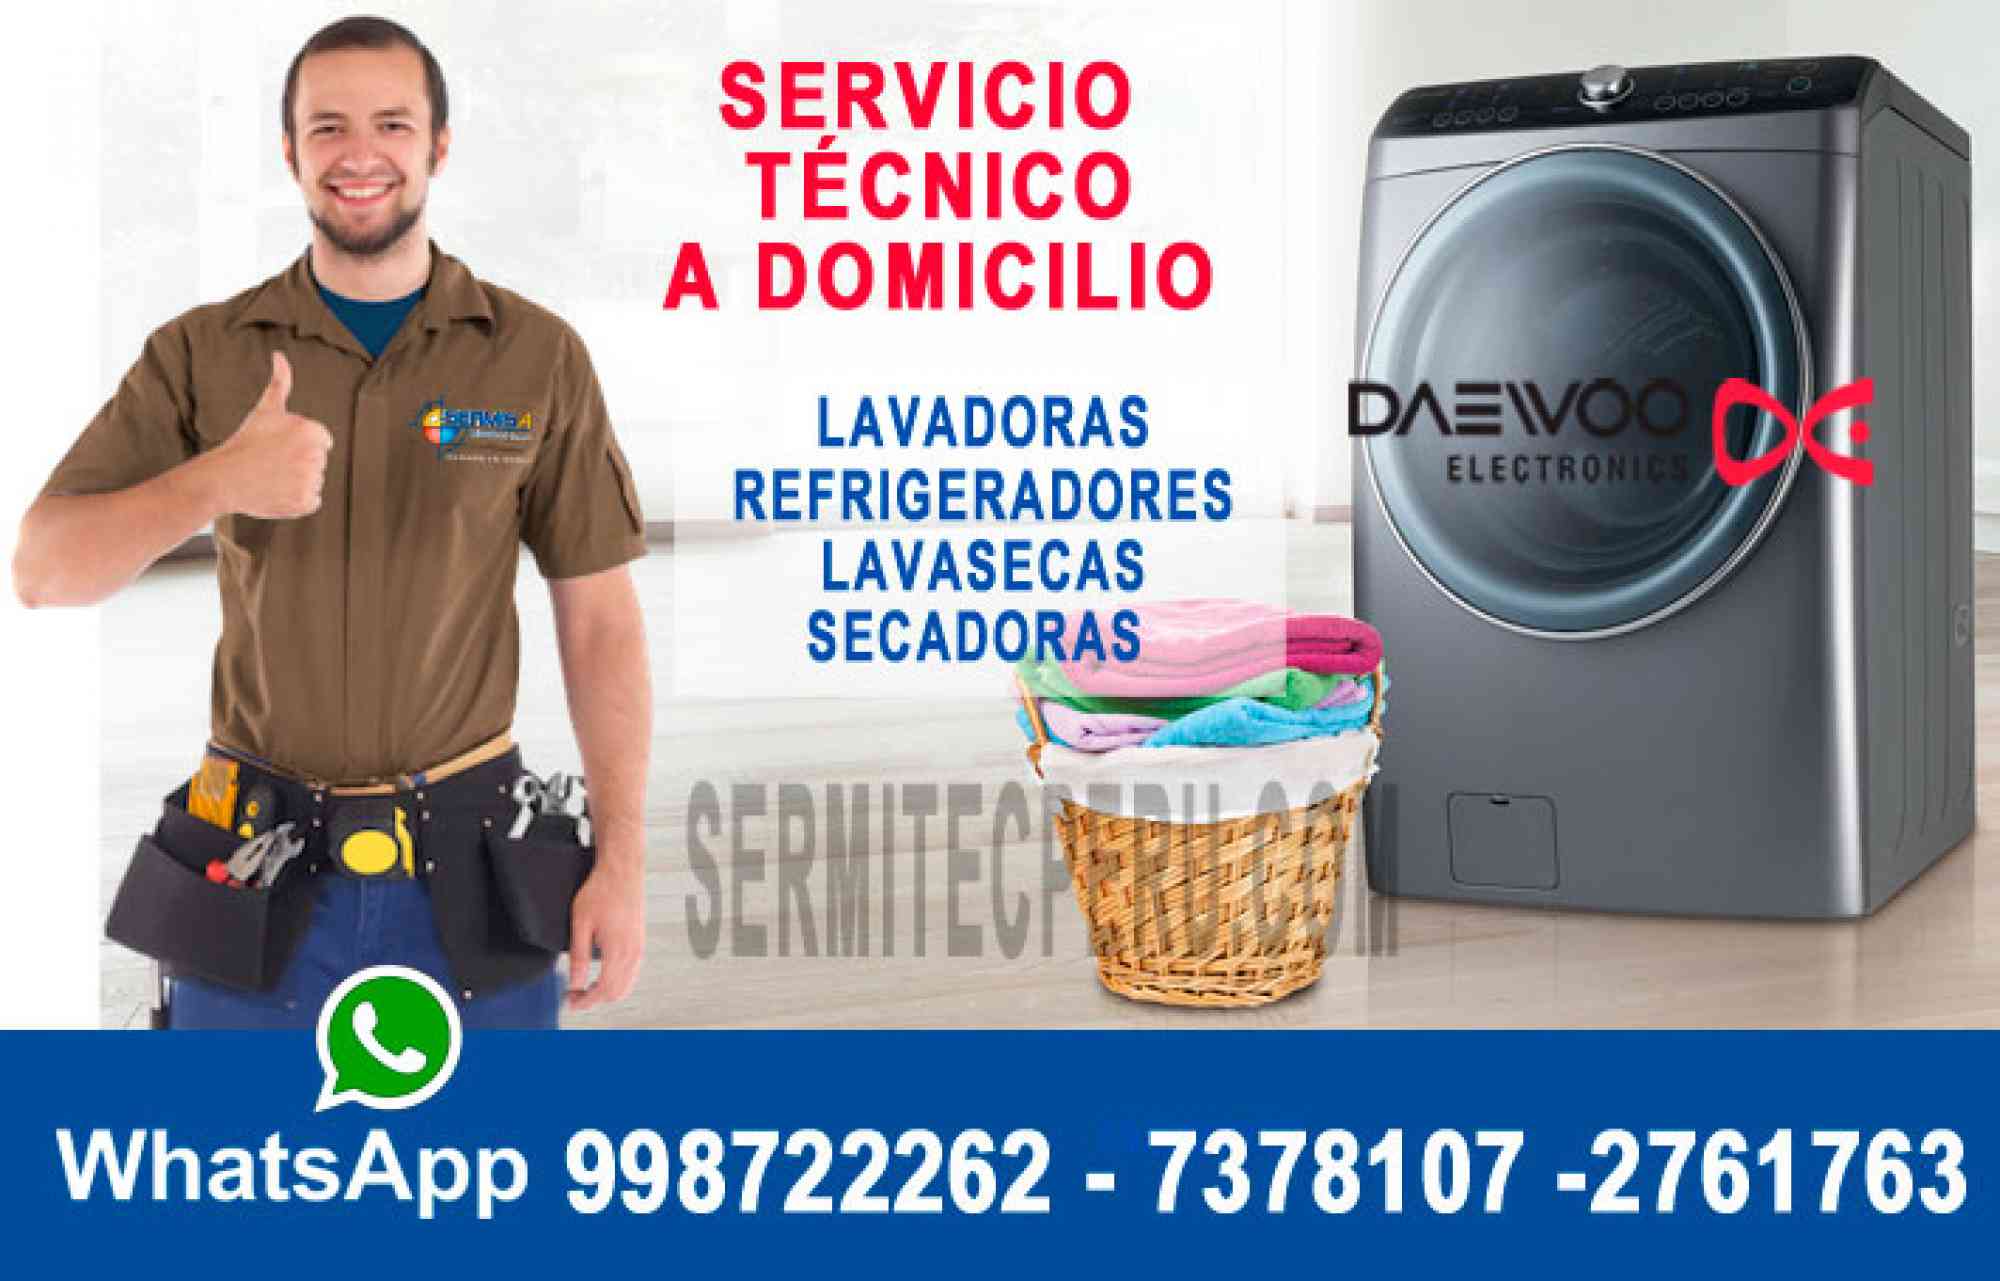 Anuncio de EASY! Daewoo 2761763 Reparacion de Lavadoras  en San Juan de Miraflores en Lima